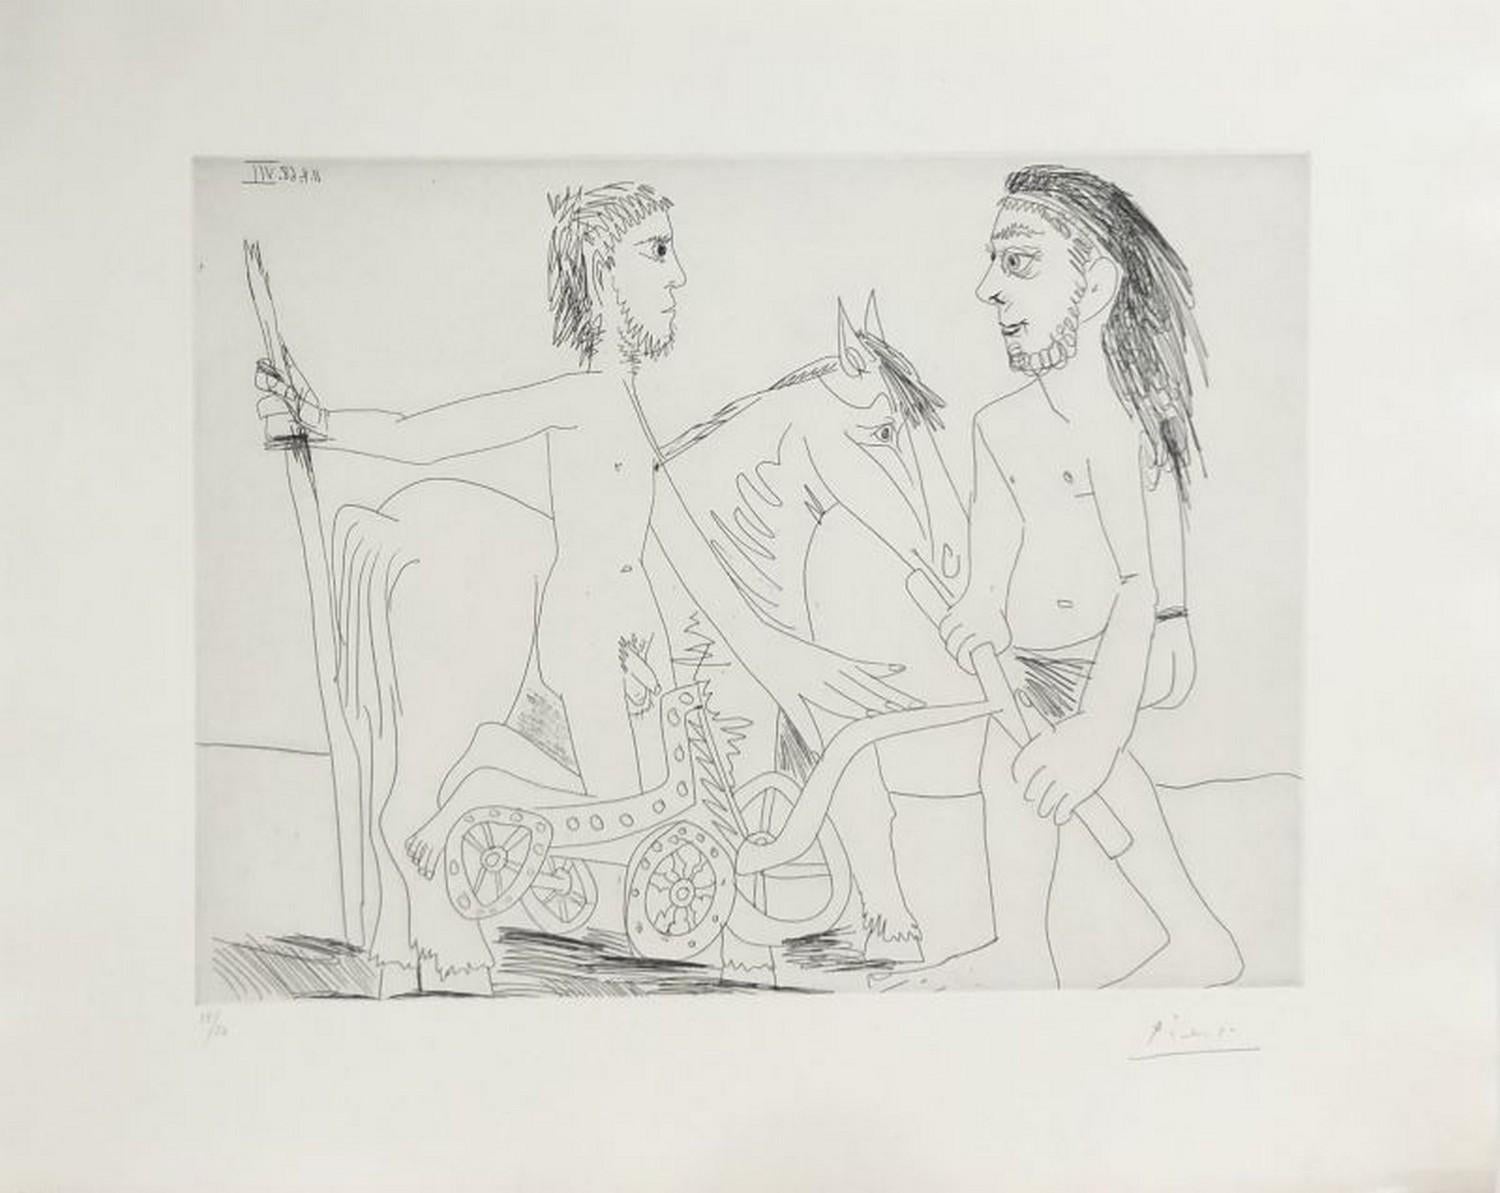 Pablo Picasso Abstract Print - Suite "Les 347", Télévision : combat de chars à l'antique 